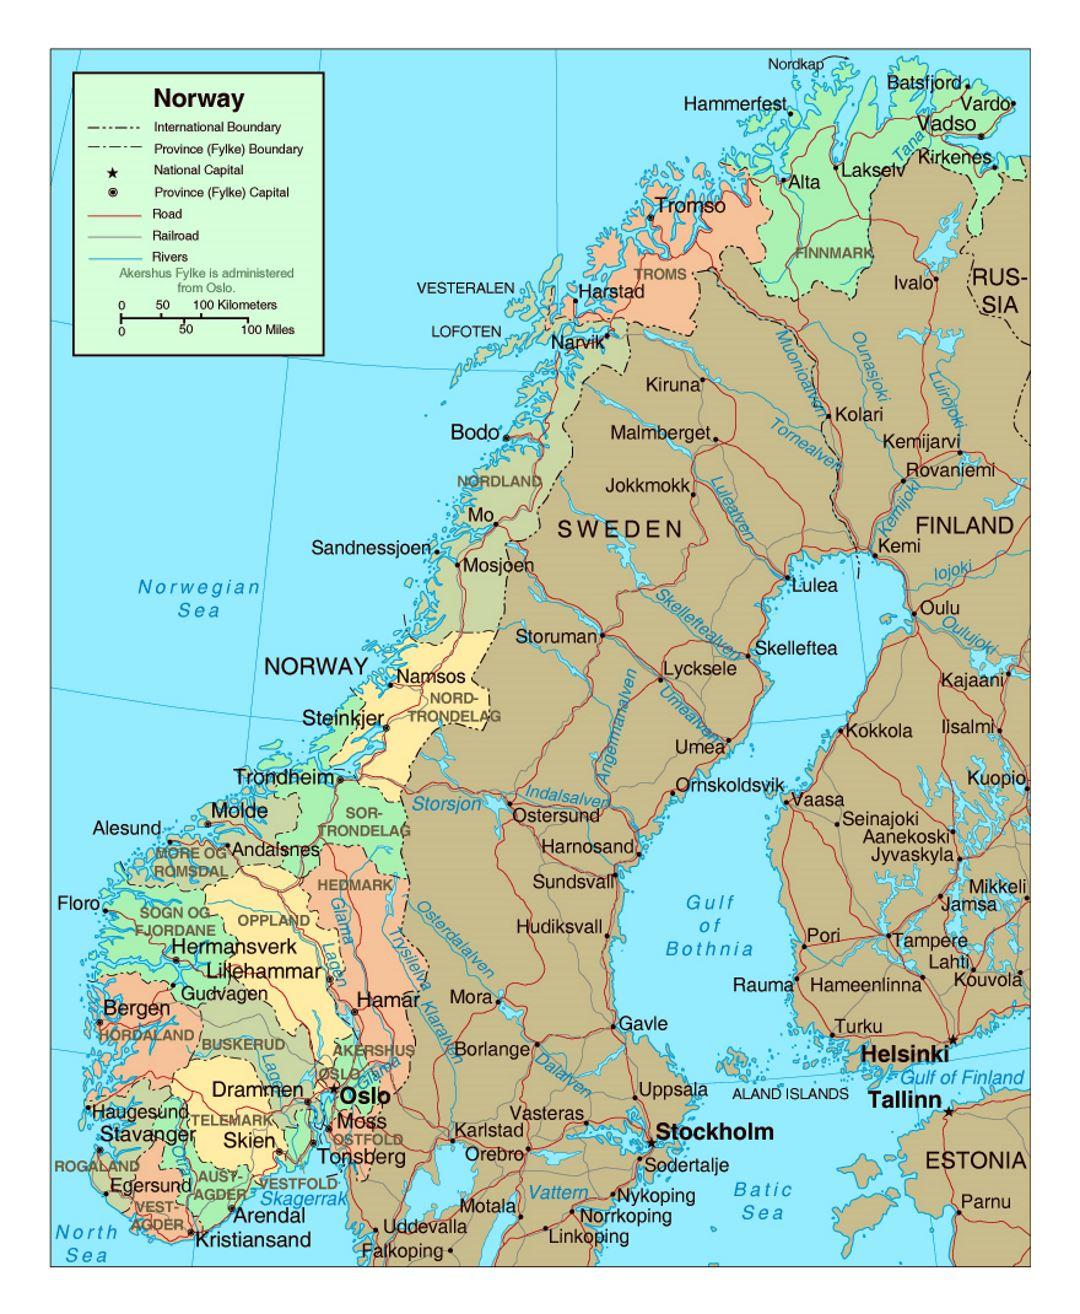 norge karta städer Norge Stader Karta Karta Over Norge Med Stader Norra Europa Europa norge karta städer